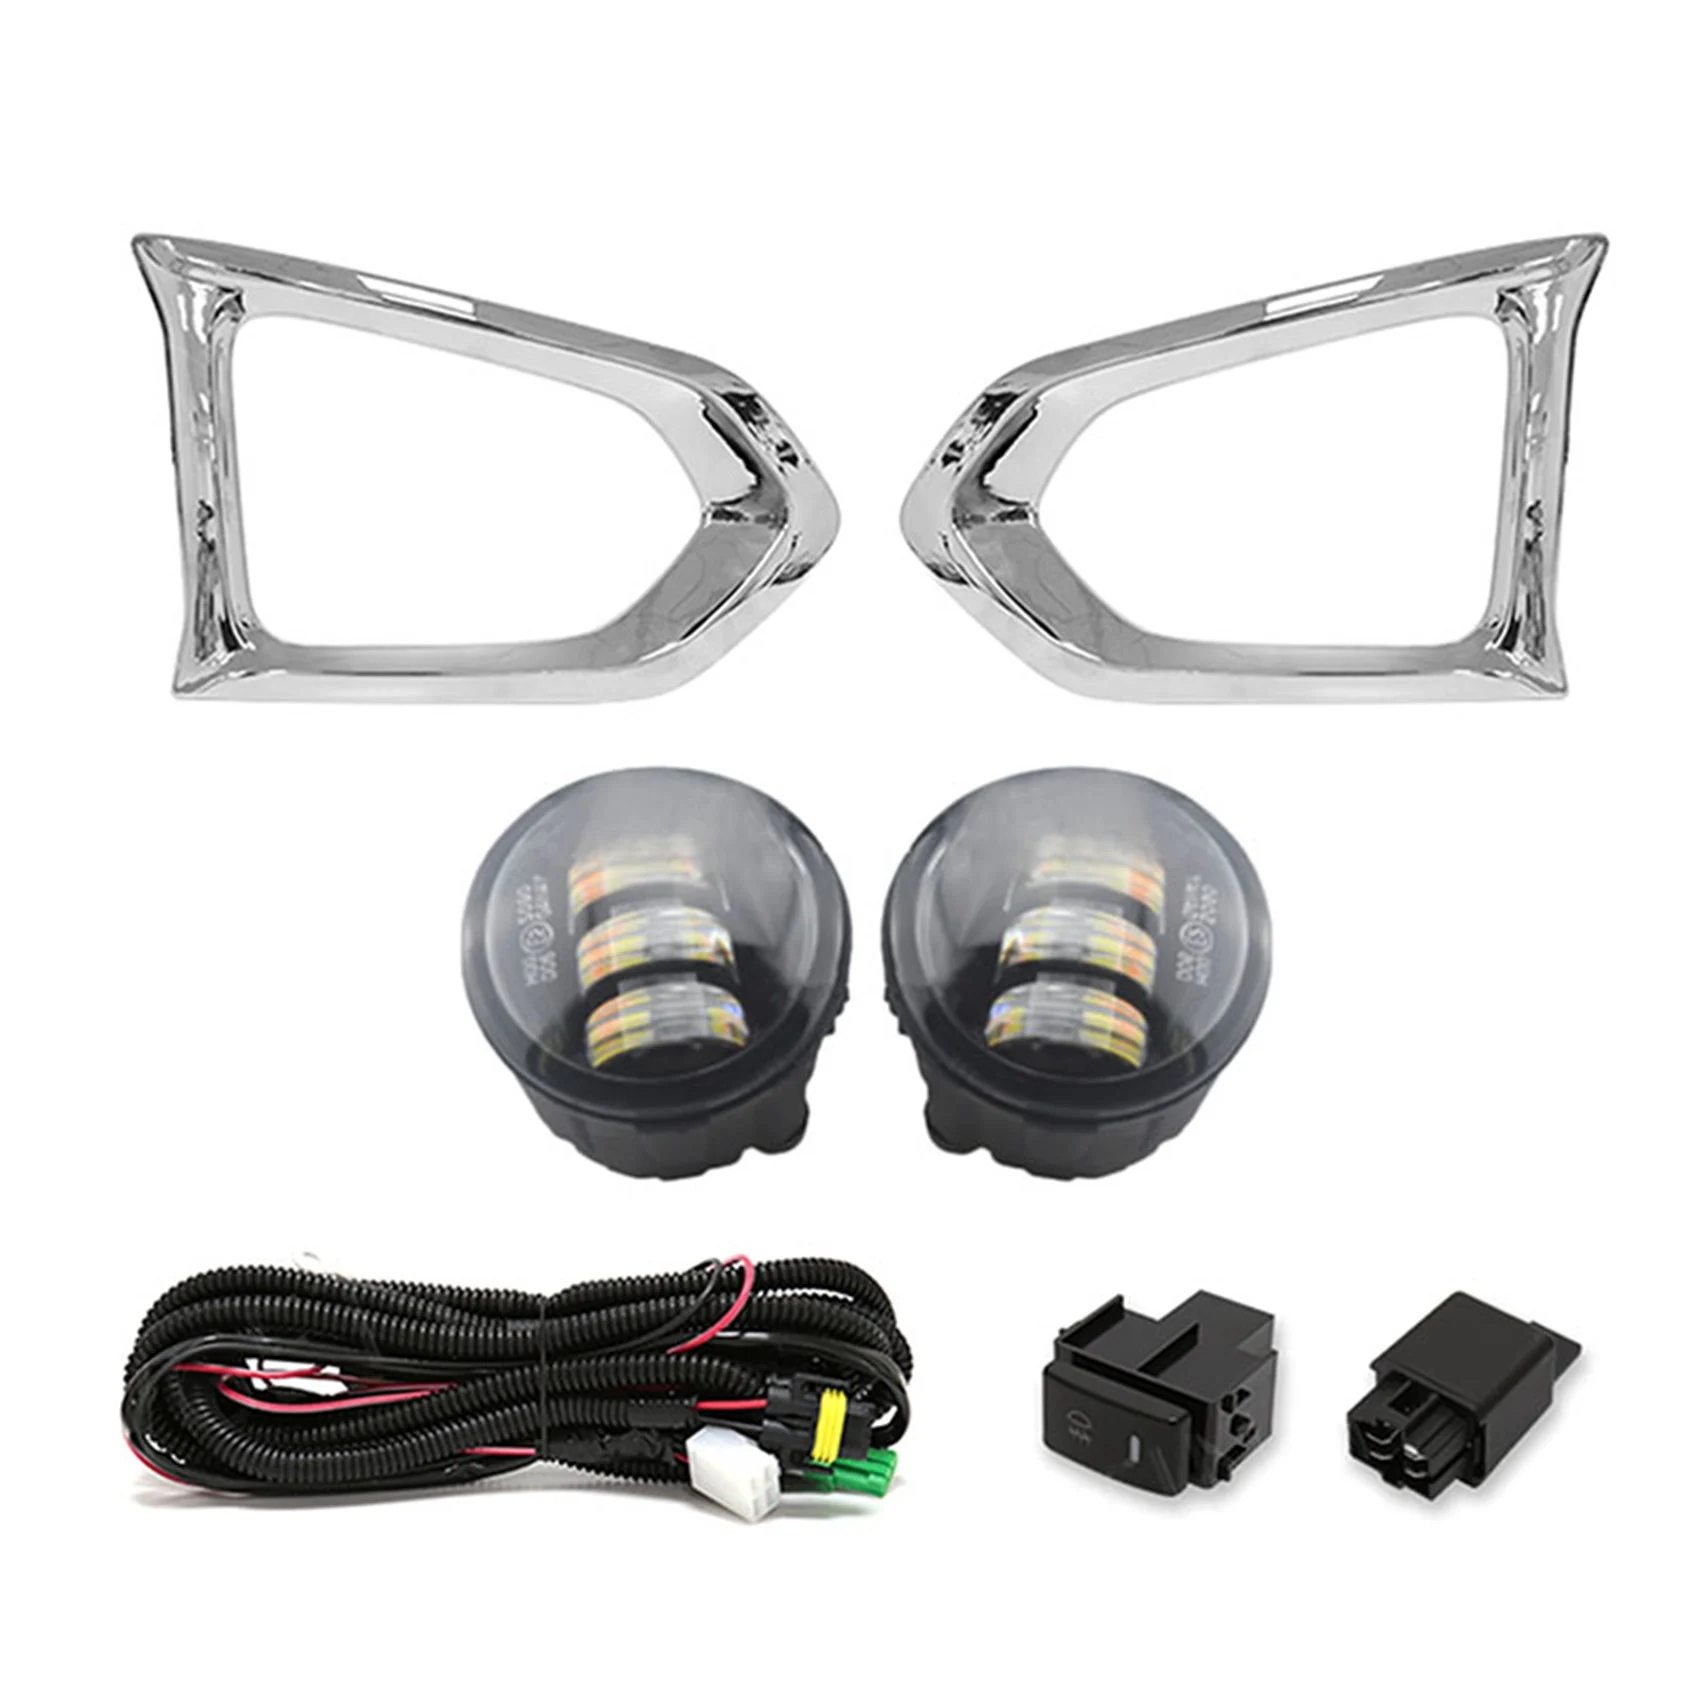 

1Set DRL Led Fog Light +Lamp Cover +Wiring+Switch Kit Bumper Daytime Running Light for Nissan Patrol 2014-2019,Yellow